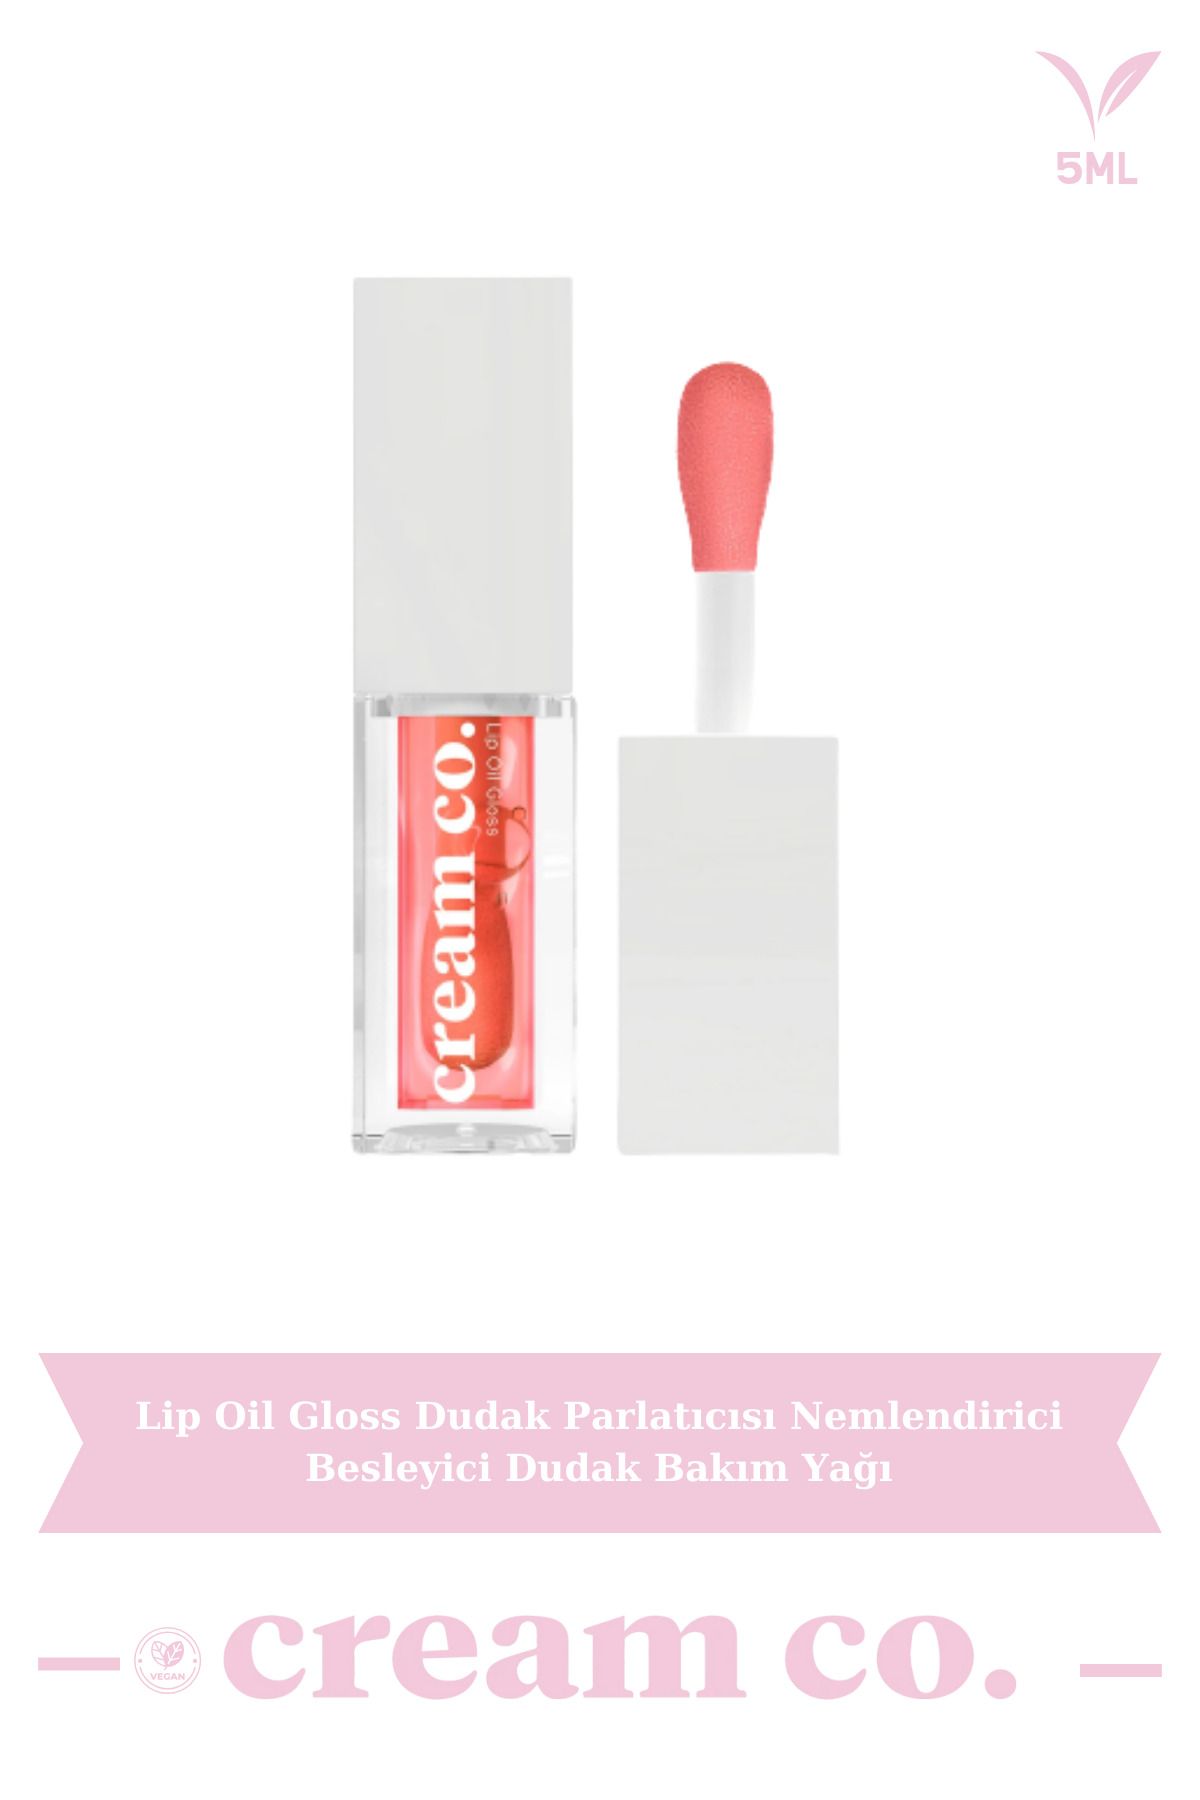 Cream Co. Lip Oil Gloss Dudak Parlatıcısı Nemlendirici Besleyici Dudak Bakım Yağı